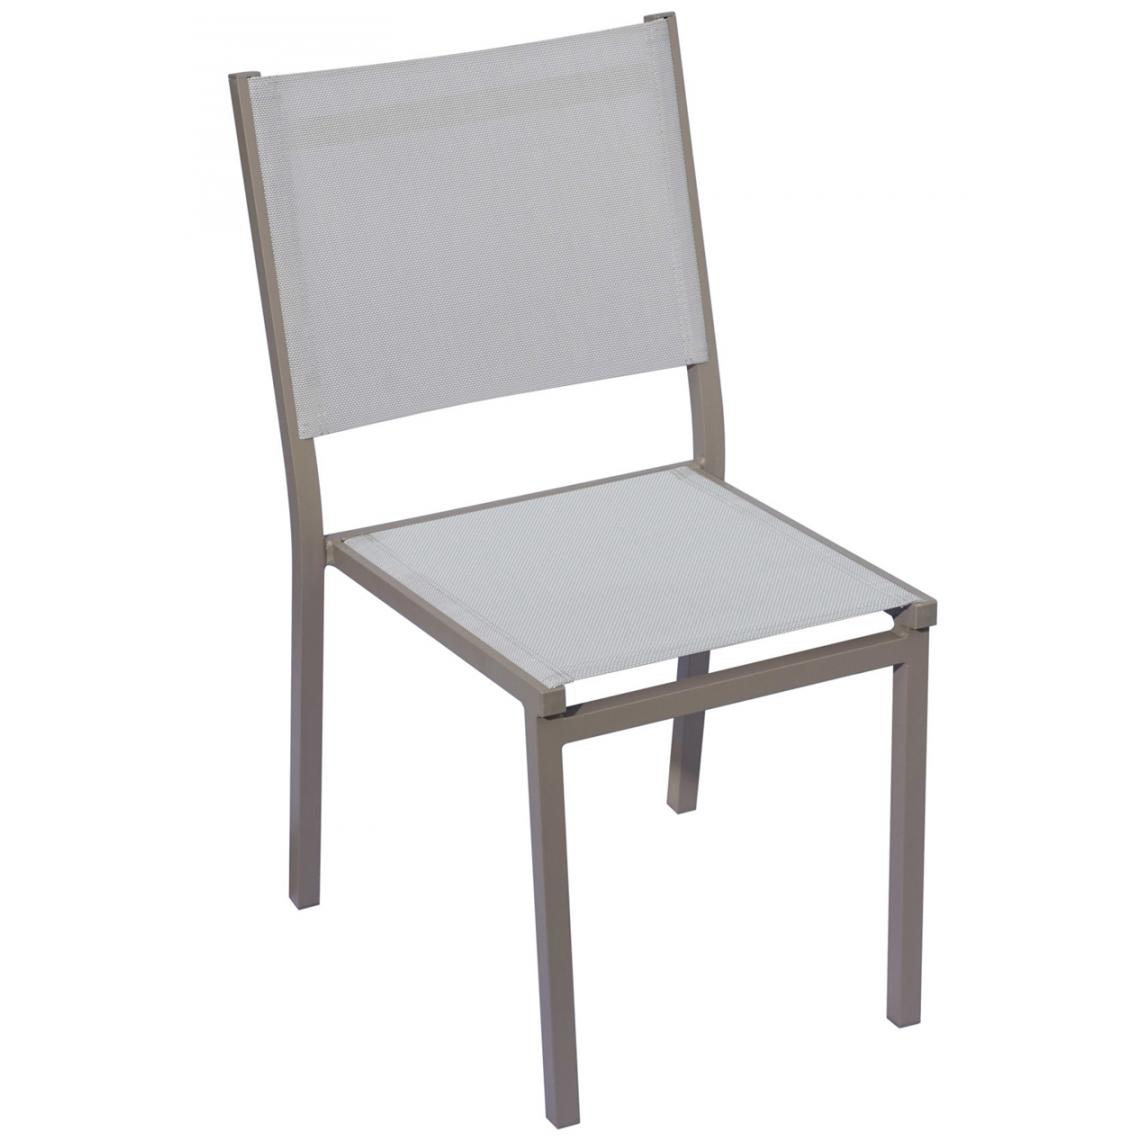 Pegane - Lot de 4 Chaises en aluminium et textilène coloris gris clair - 87 x 57 x 48 cm -PEGANE- - Chaises de jardin